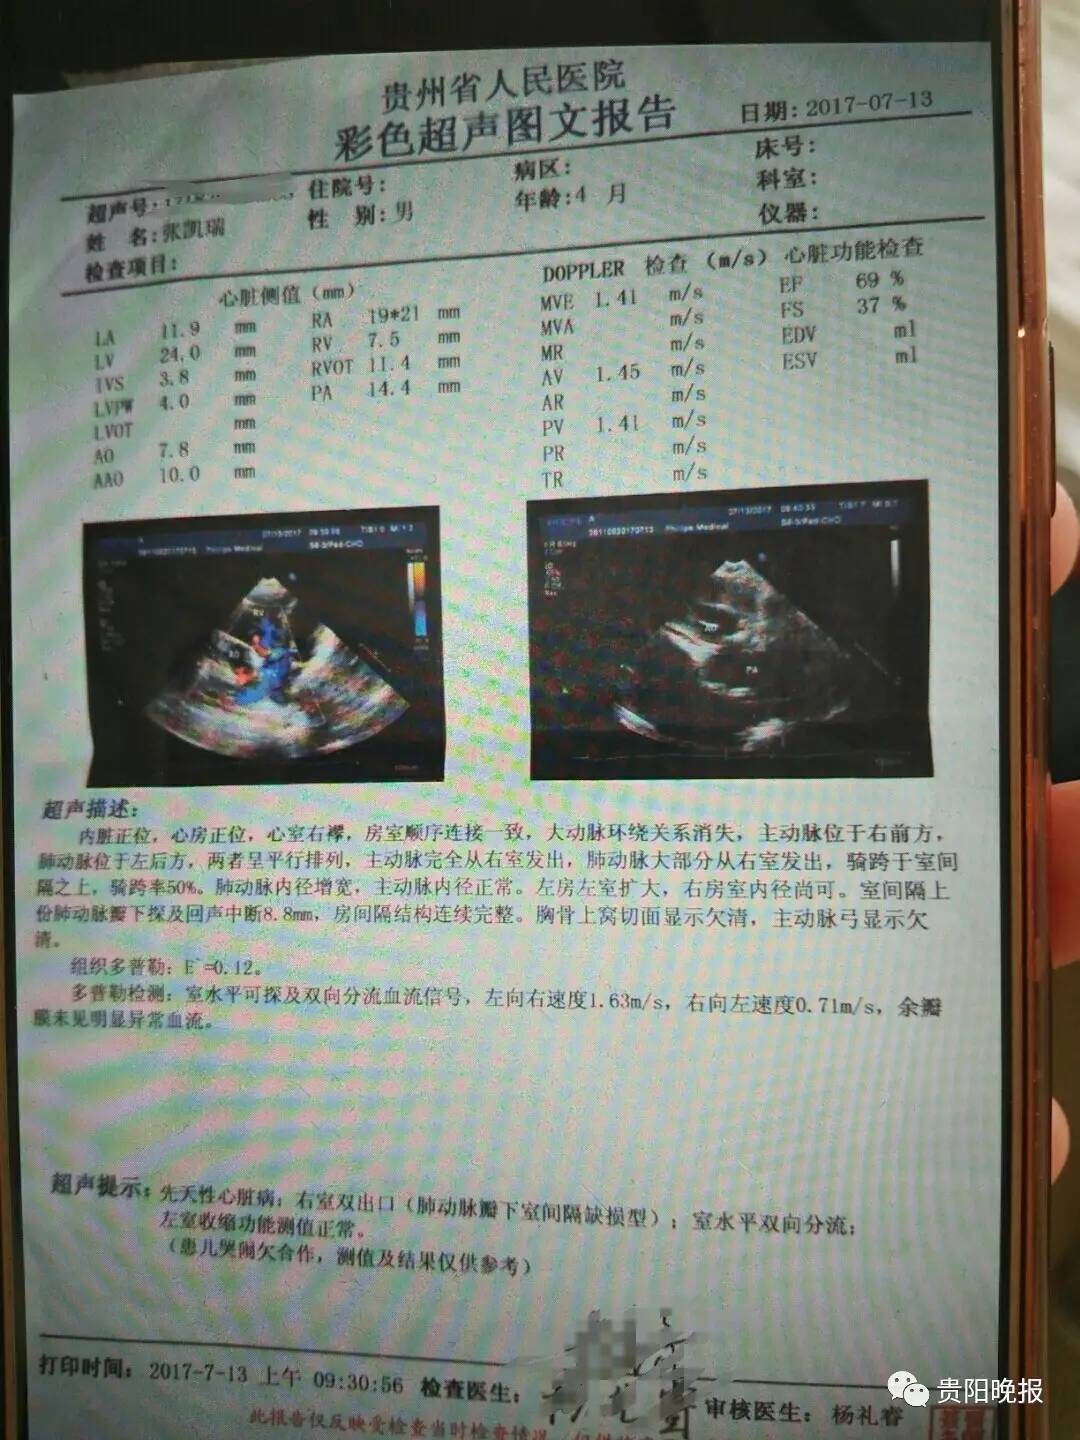 怀孕报告单图片 清晰图片